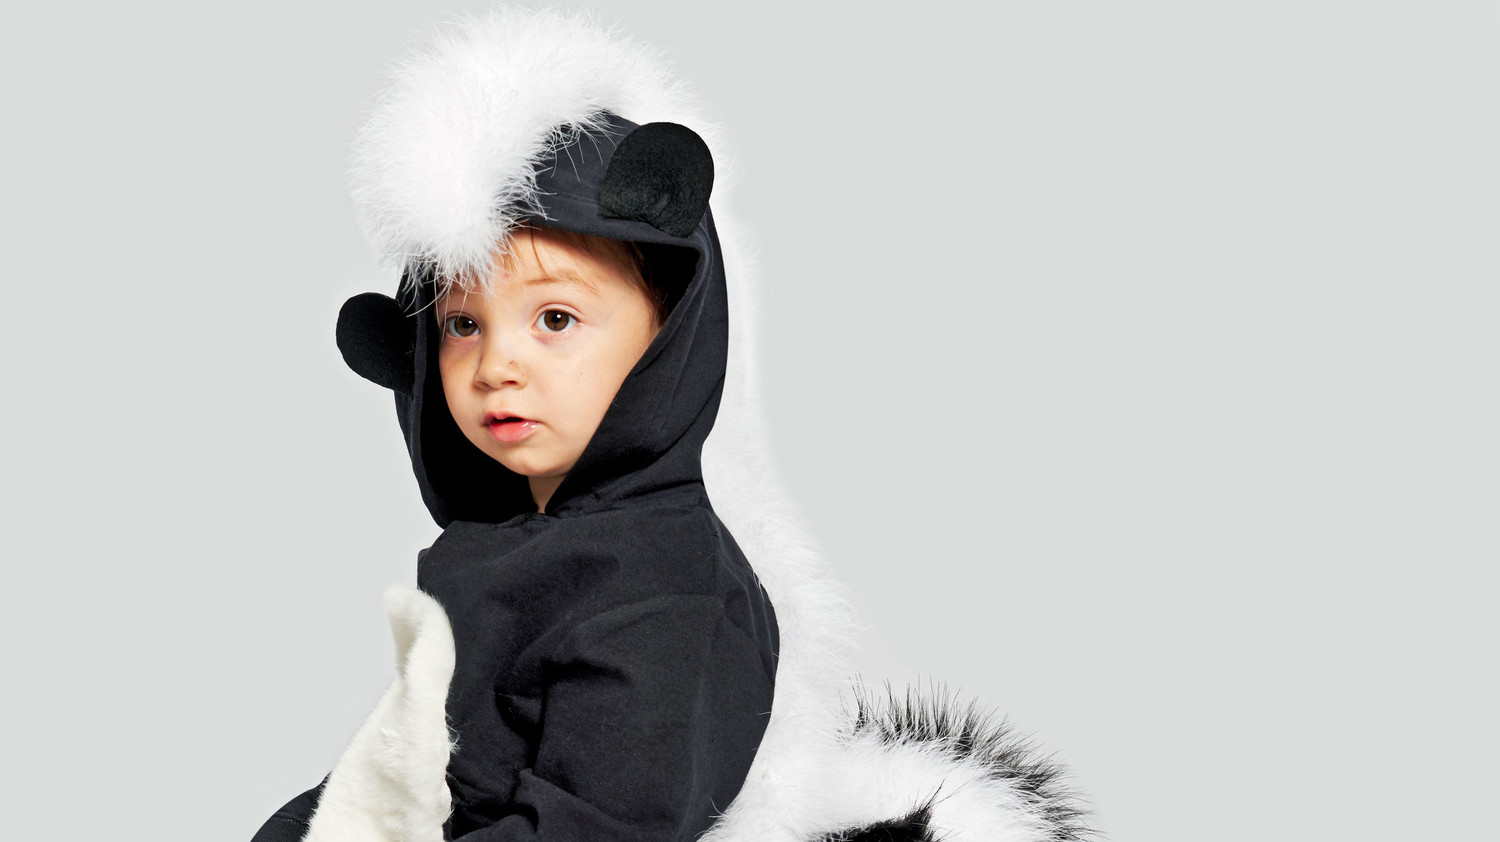 baby boy skunk costume